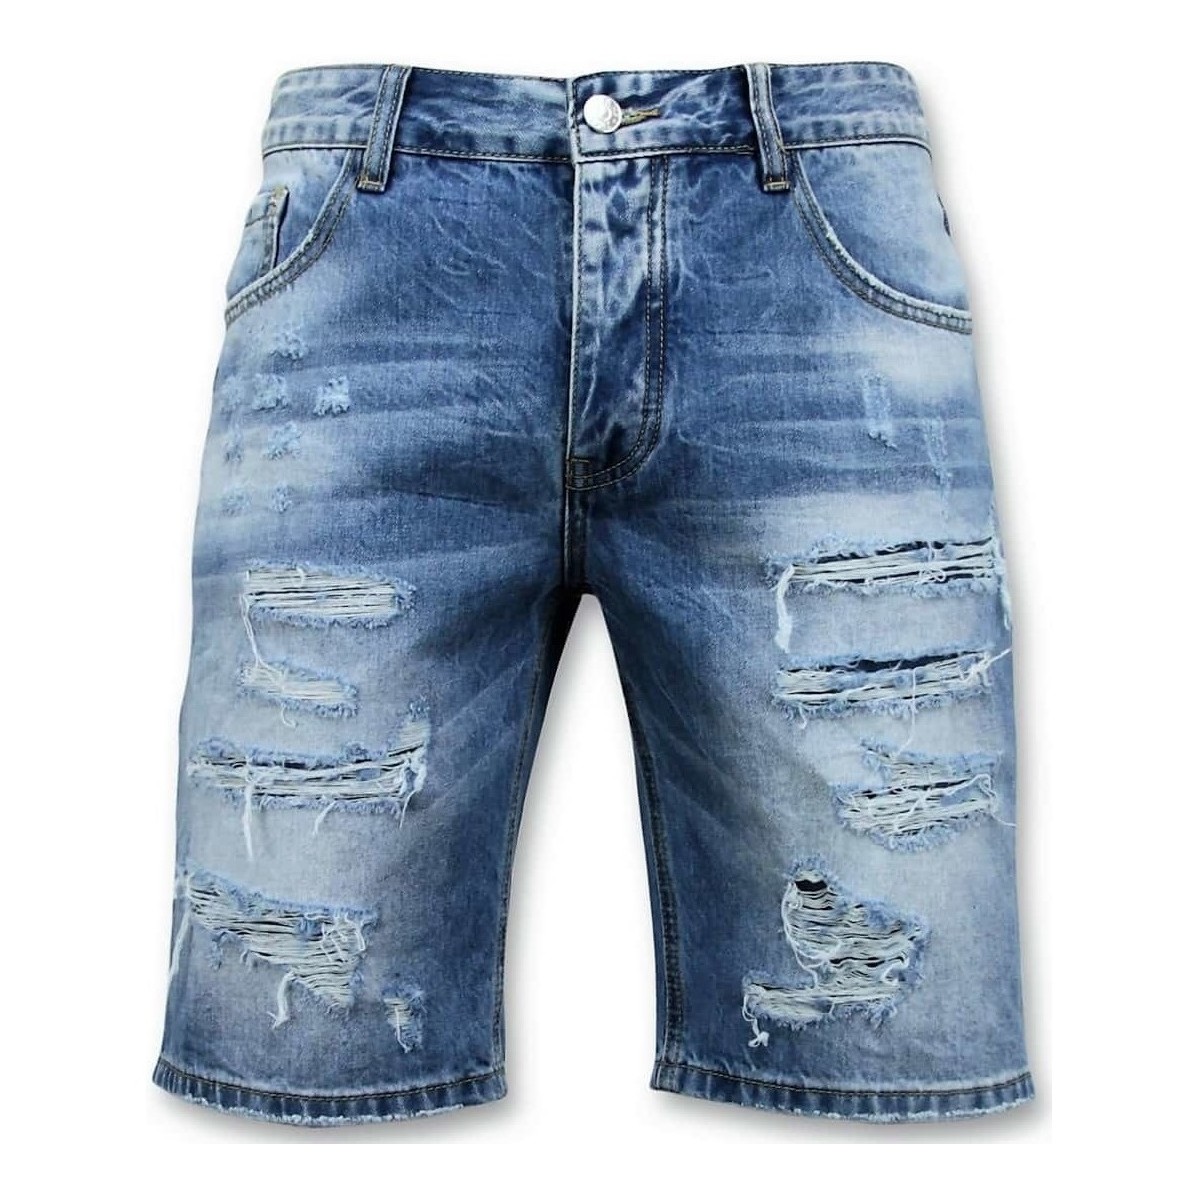 Textil Muži Tříčtvrteční kalhoty Enos 107476893 Modrá